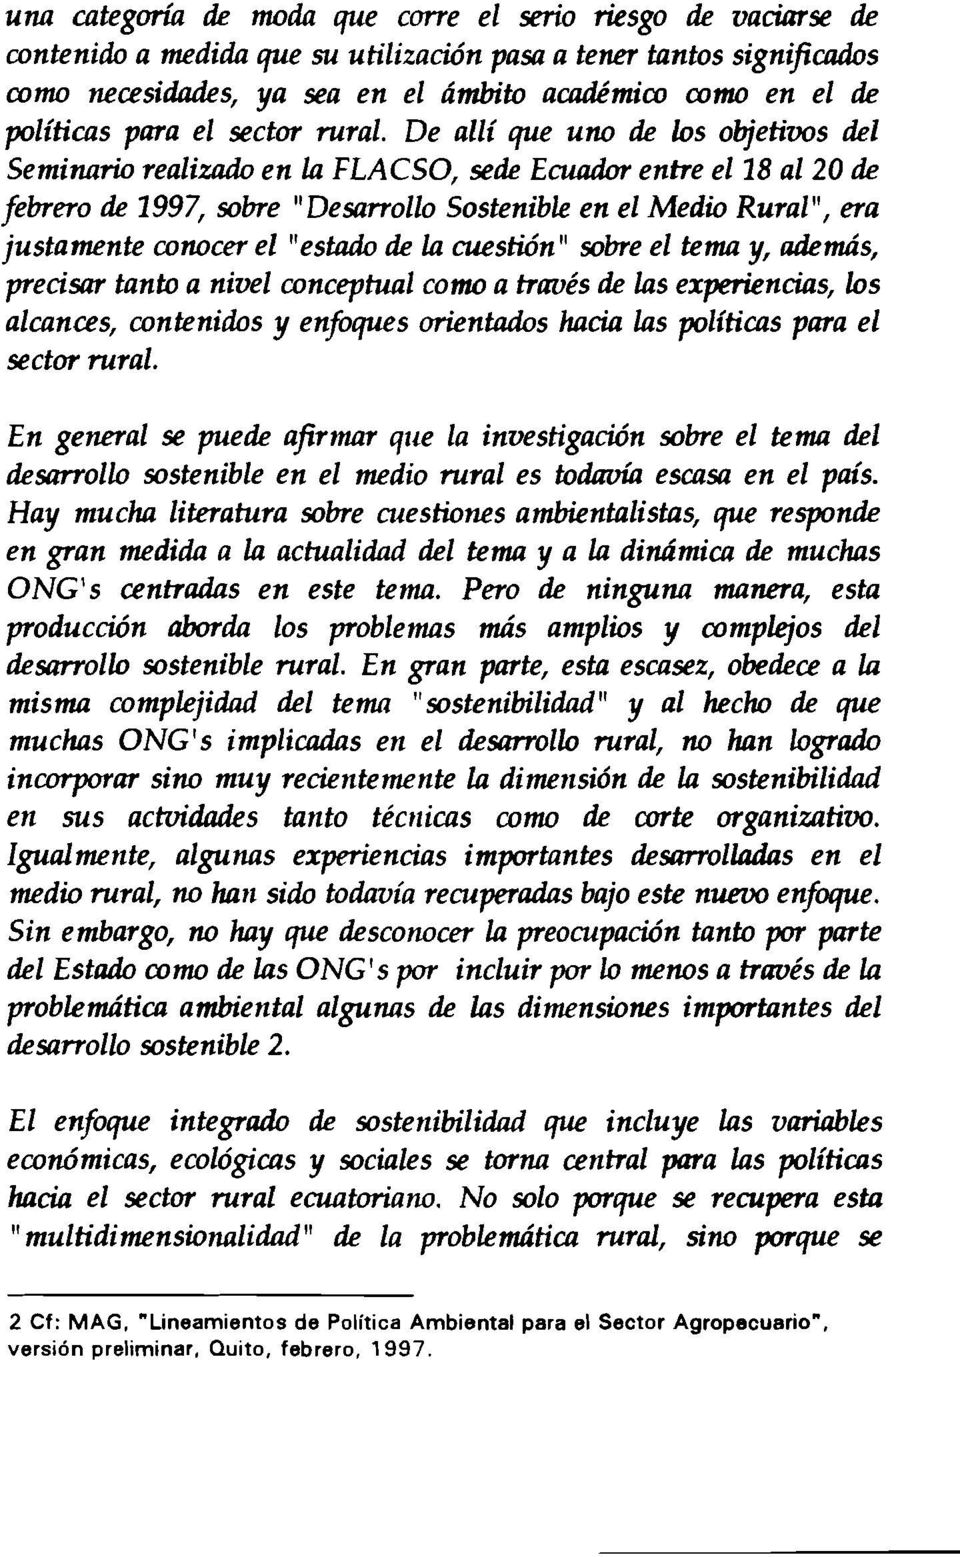 De alii que uno de los objetivos del Seminario realizado en la FLACSO, sede Ecuador entre el18 al20 de febrero de 1997, sobre "Desarrollo Sostenible en el Medio Rural", era justamente conocer el